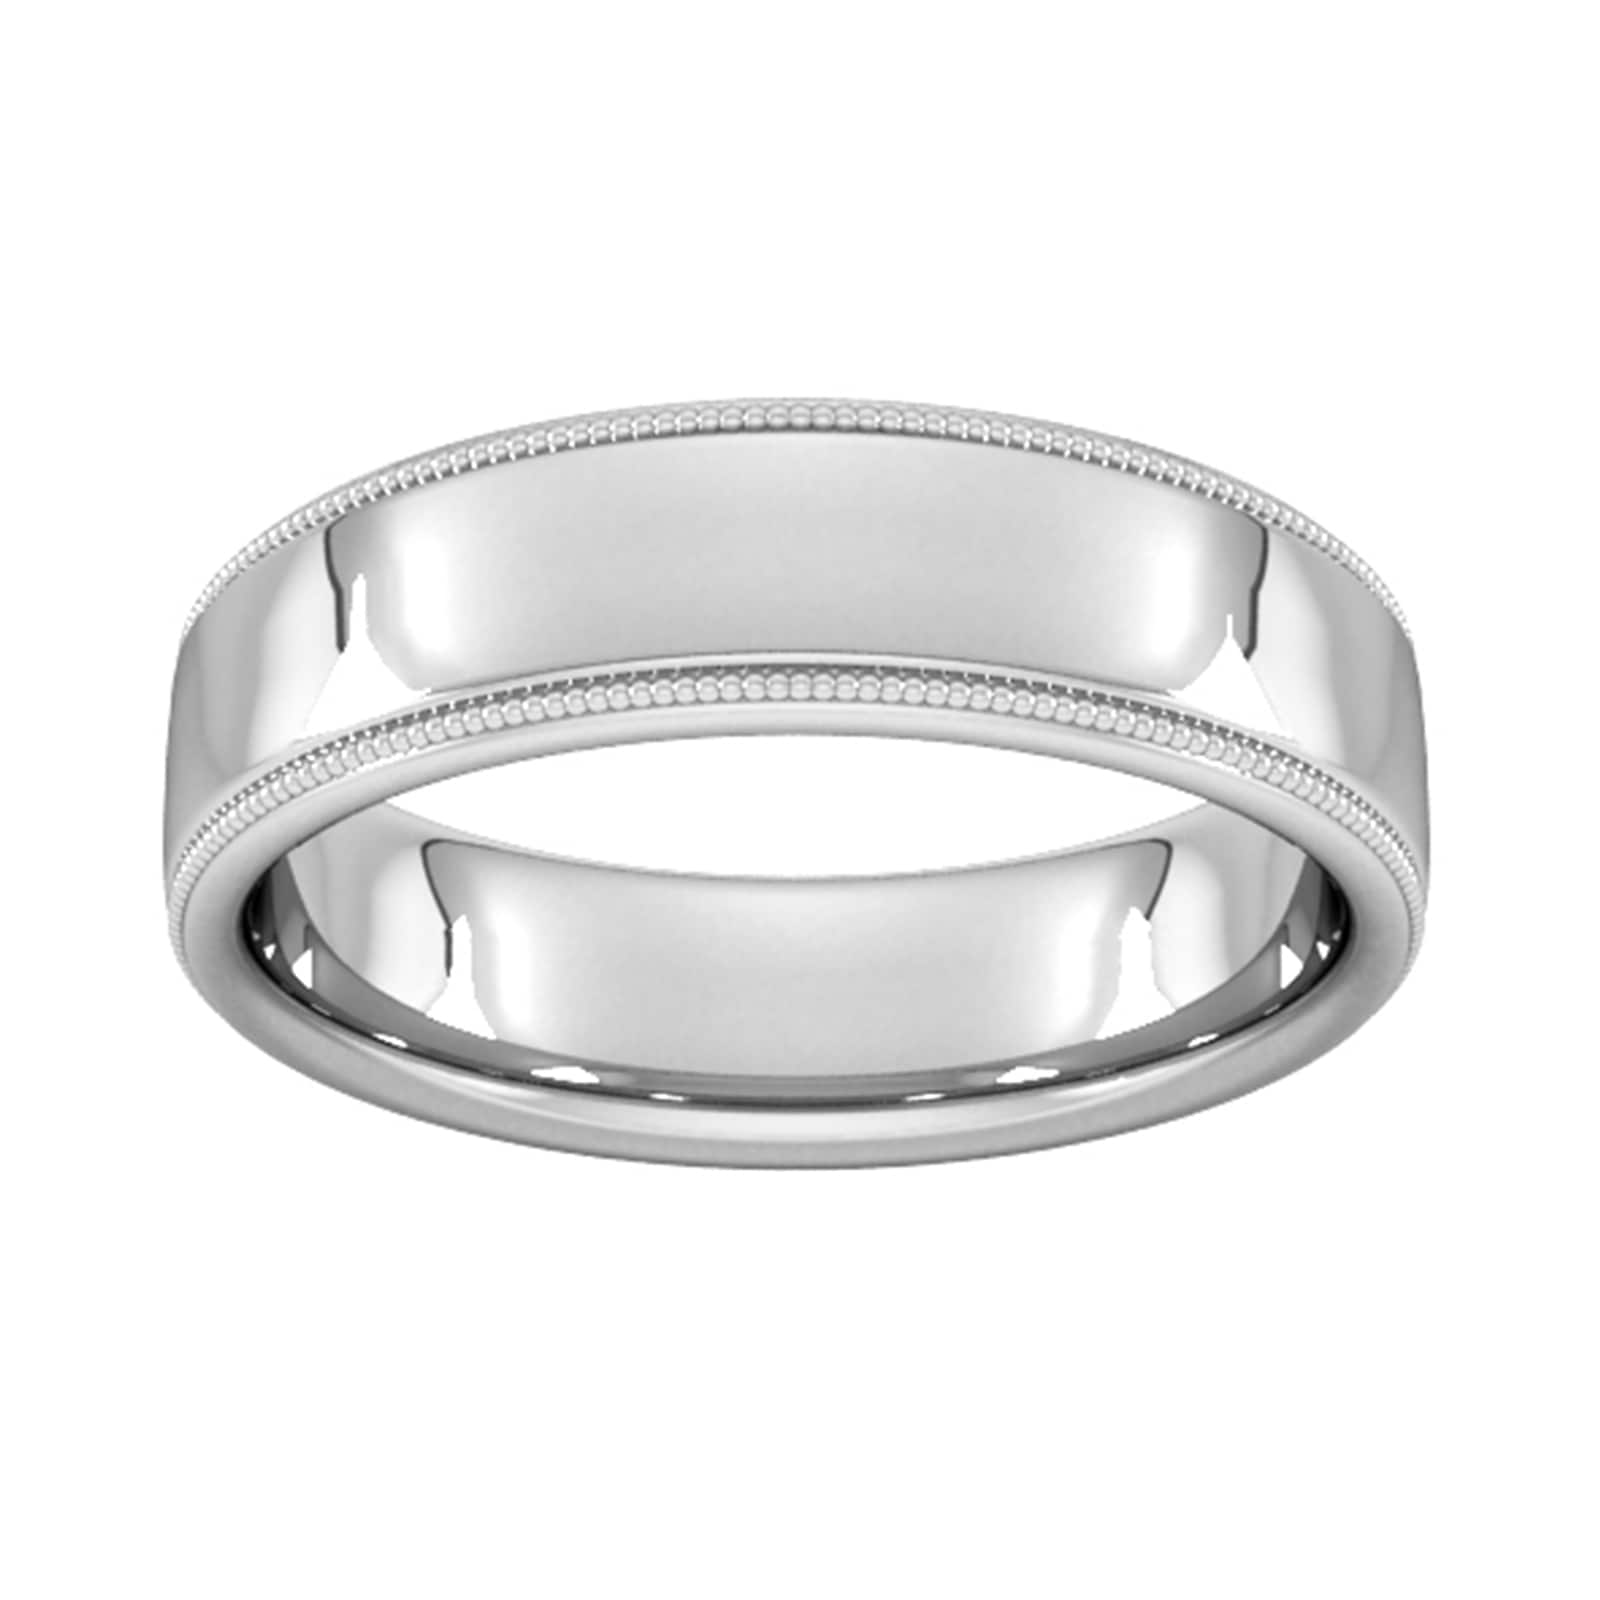 6mm D Shape Heavy Milgrain Edge Wedding Ring In 18 Carat White Gold - Ring Size N